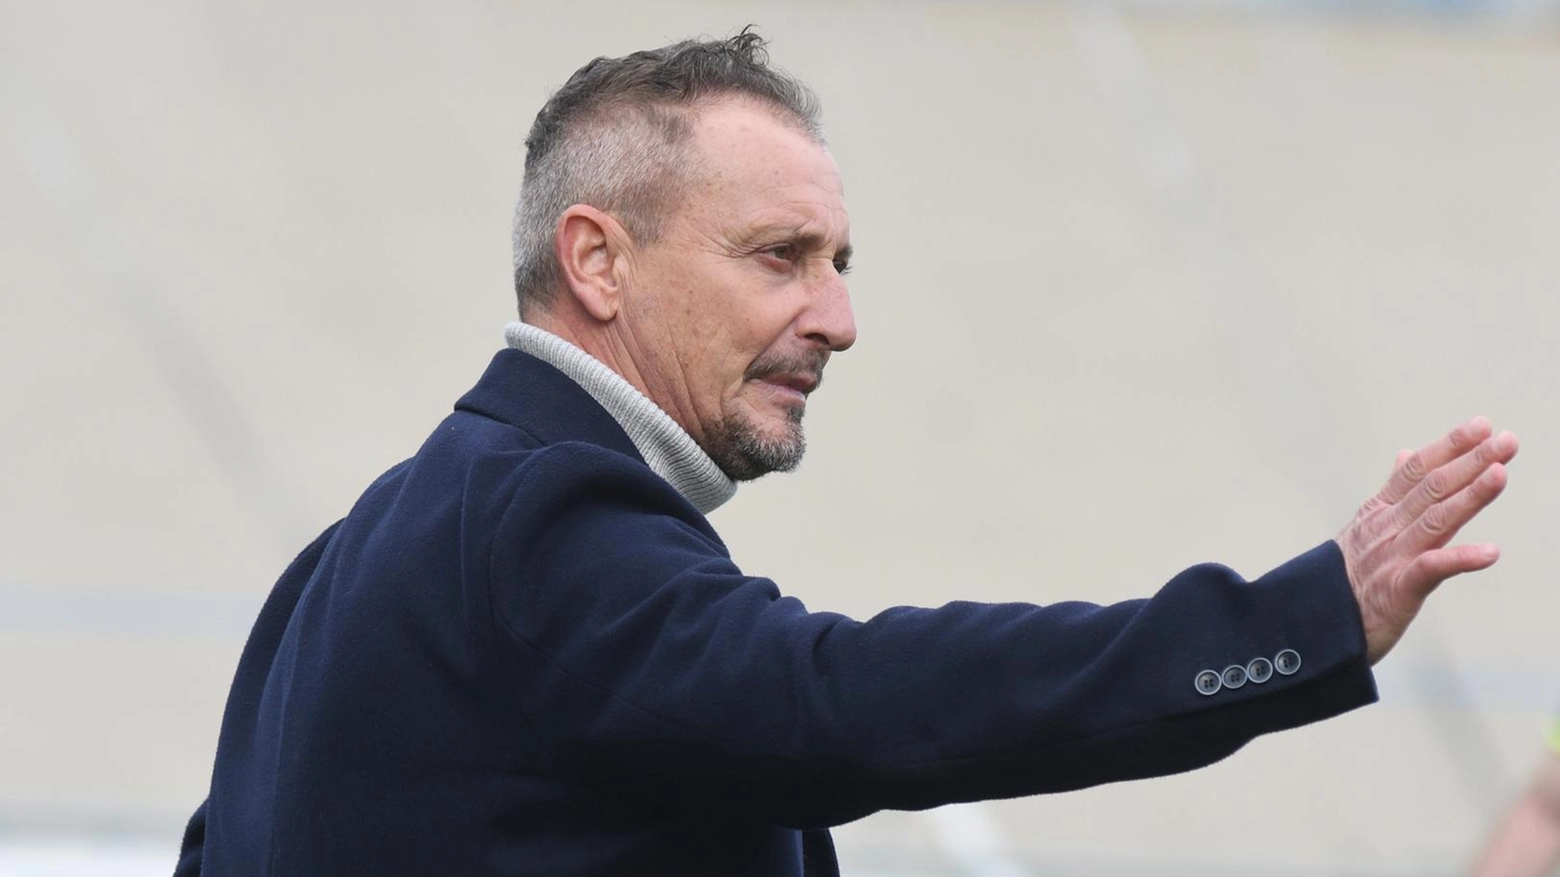 L’ex tecnico del Forlì si è scusato col club titano dopo aver ricevuto una nuova importante offerta.